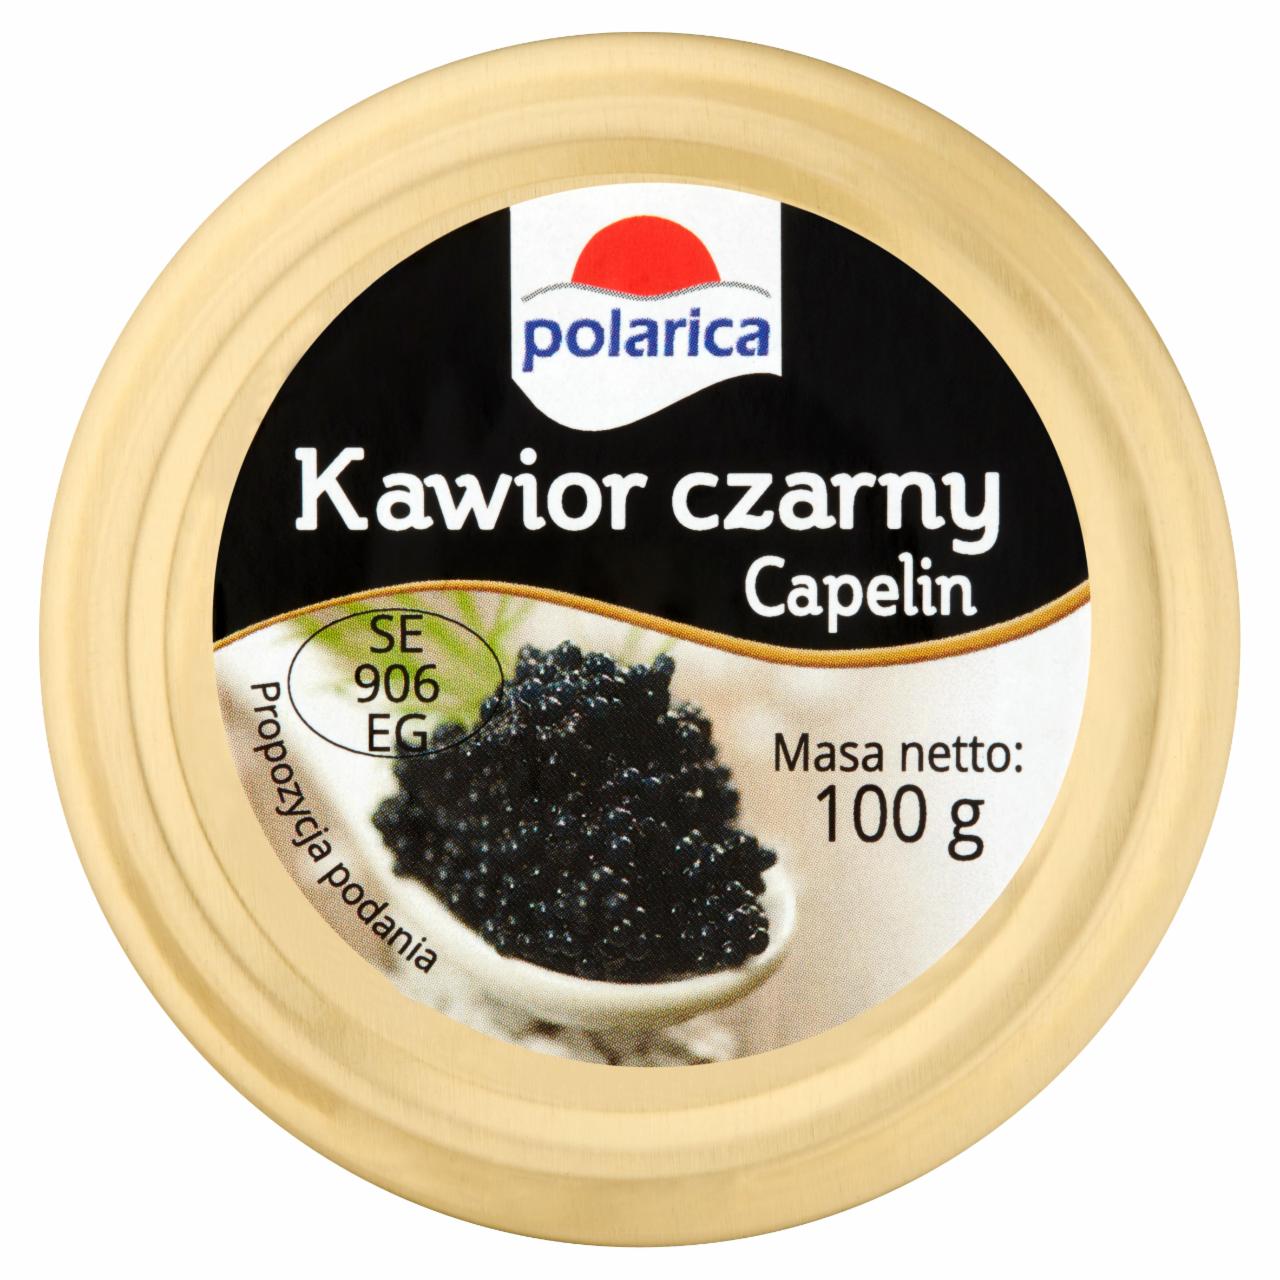 Zdjęcia - Polarica Kawior czarny Capelin 100 g